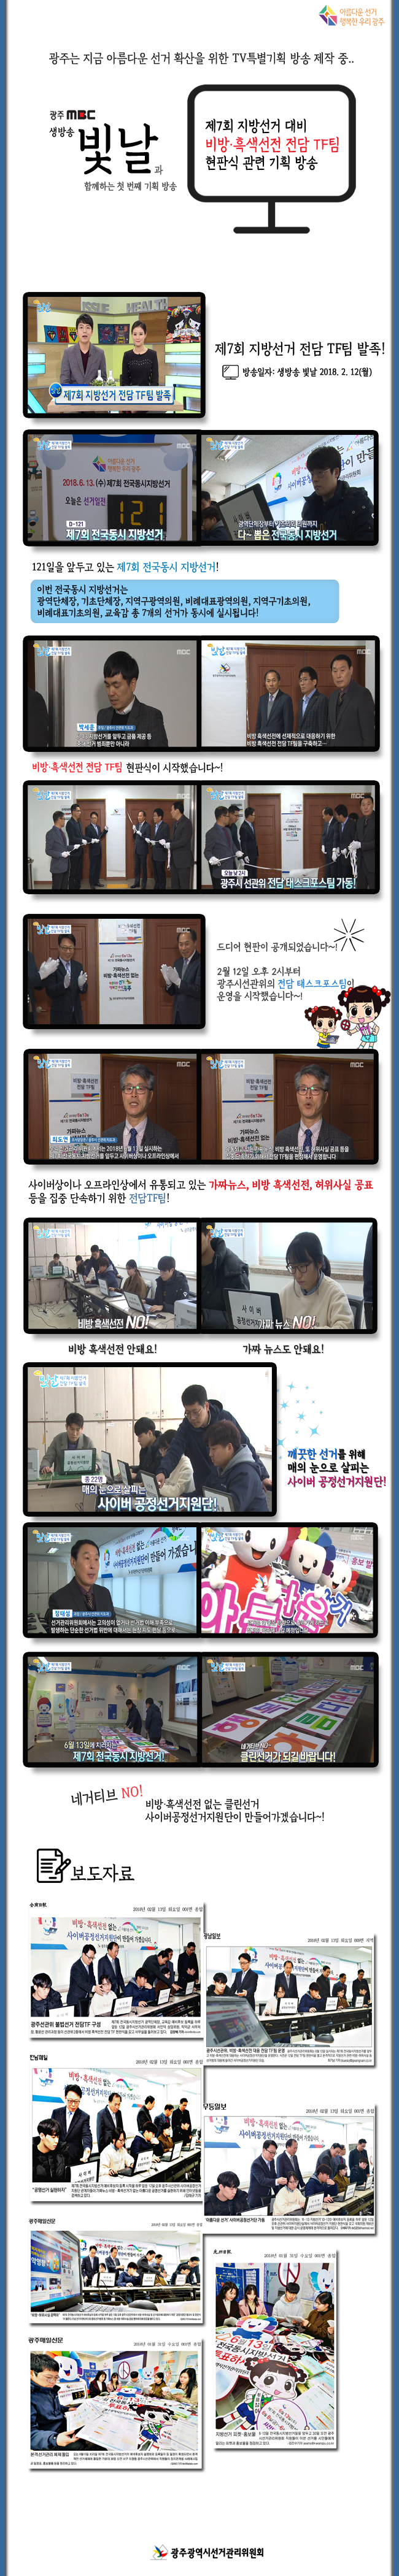 제7회 지방선거 대비 비방 흑백선전 전담TF팀 현판식 관련 기획 방송